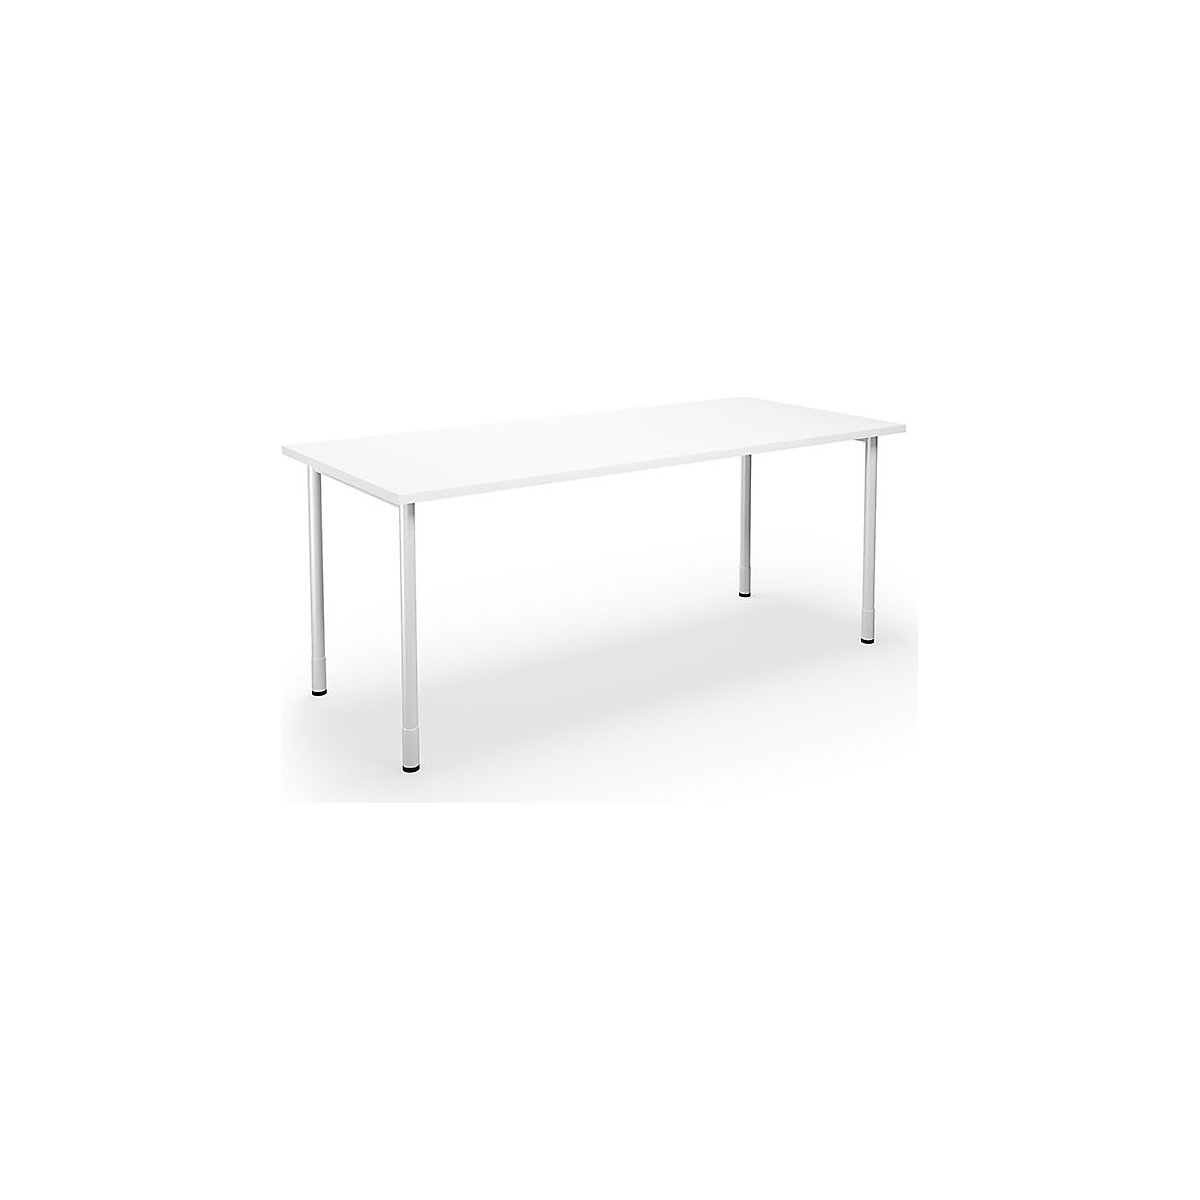 DUO-C multi-purpose desk, straight tabletop, WxD 1800 x 800 mm, white, white-5